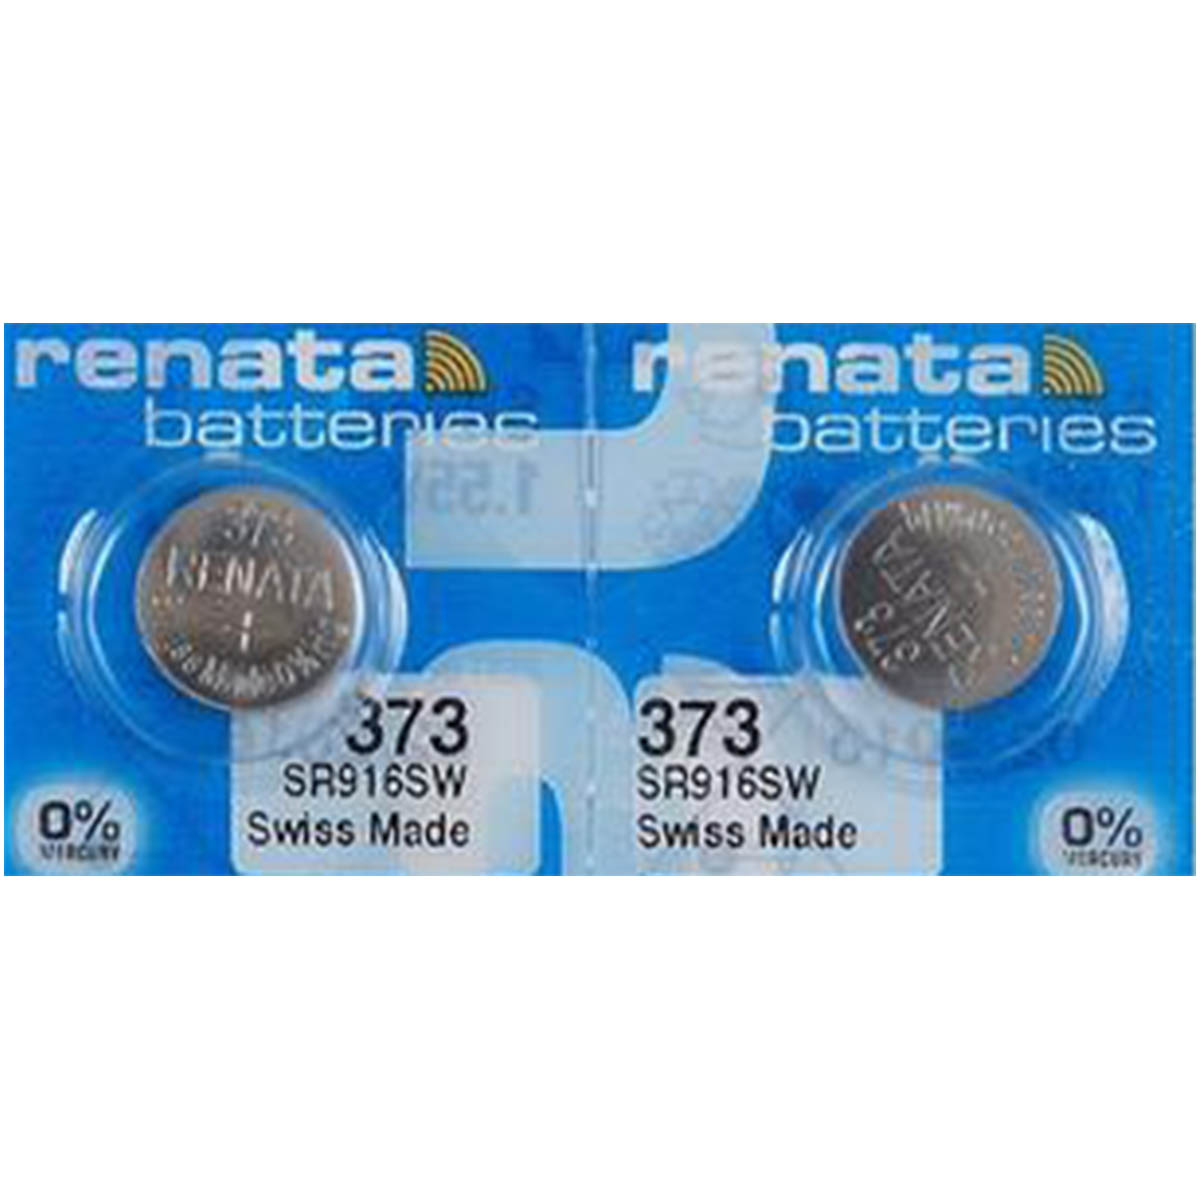 Renata 373 Battery (SR916SW) Silver Oxide 1.55V (1PC)